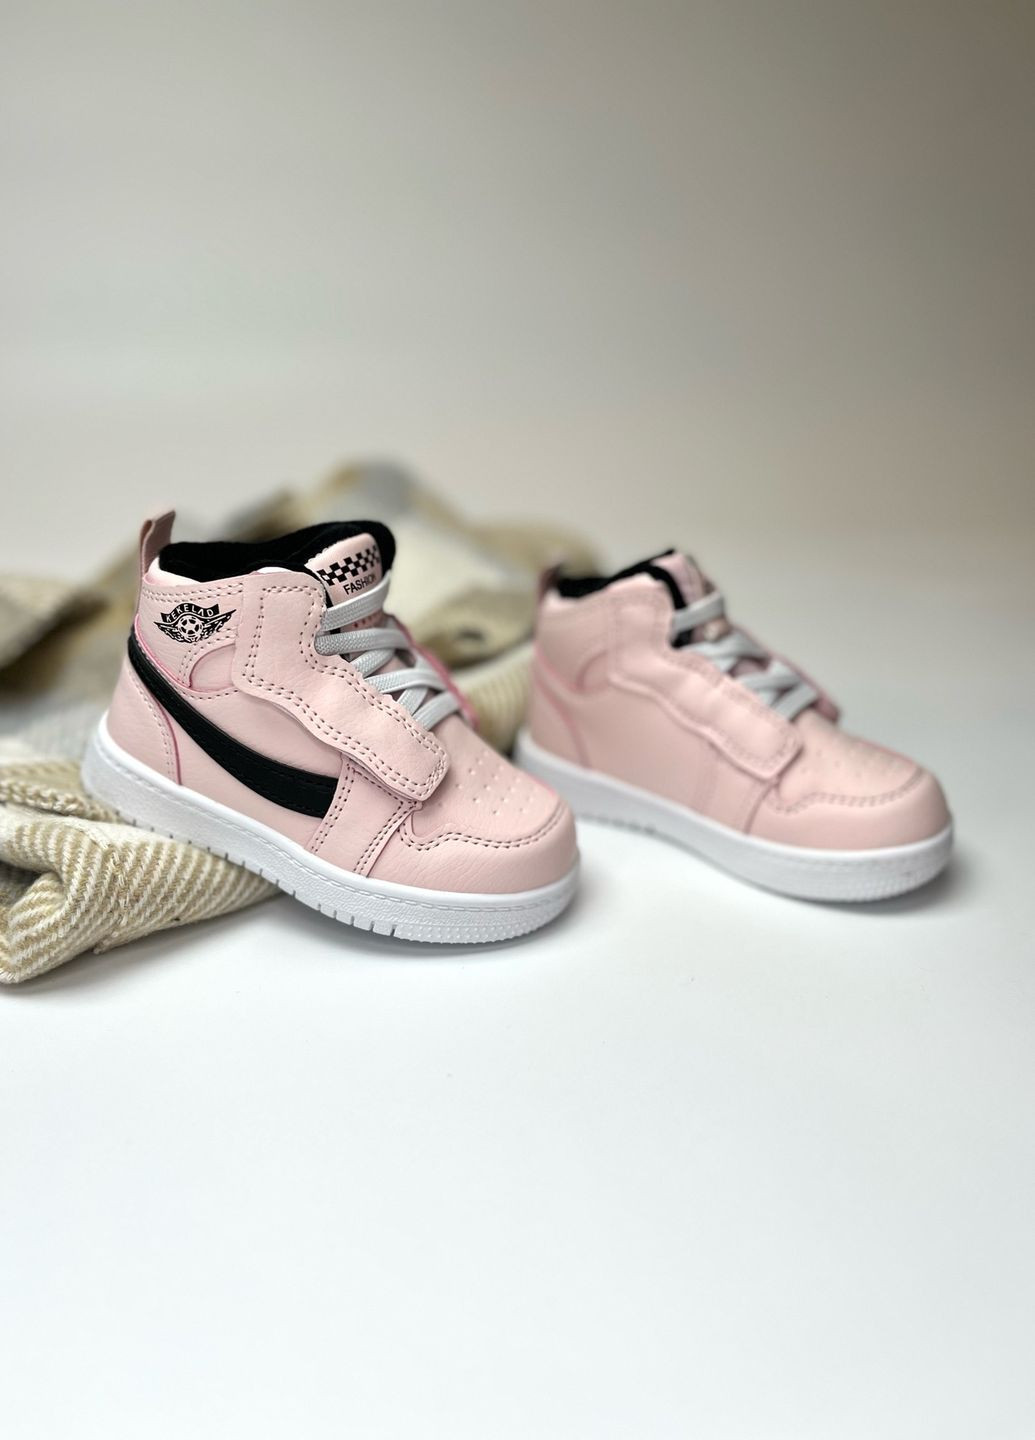 Розовые спортивные, повседневные осенние хайтопы - демисезонные ботинки Jong Golf